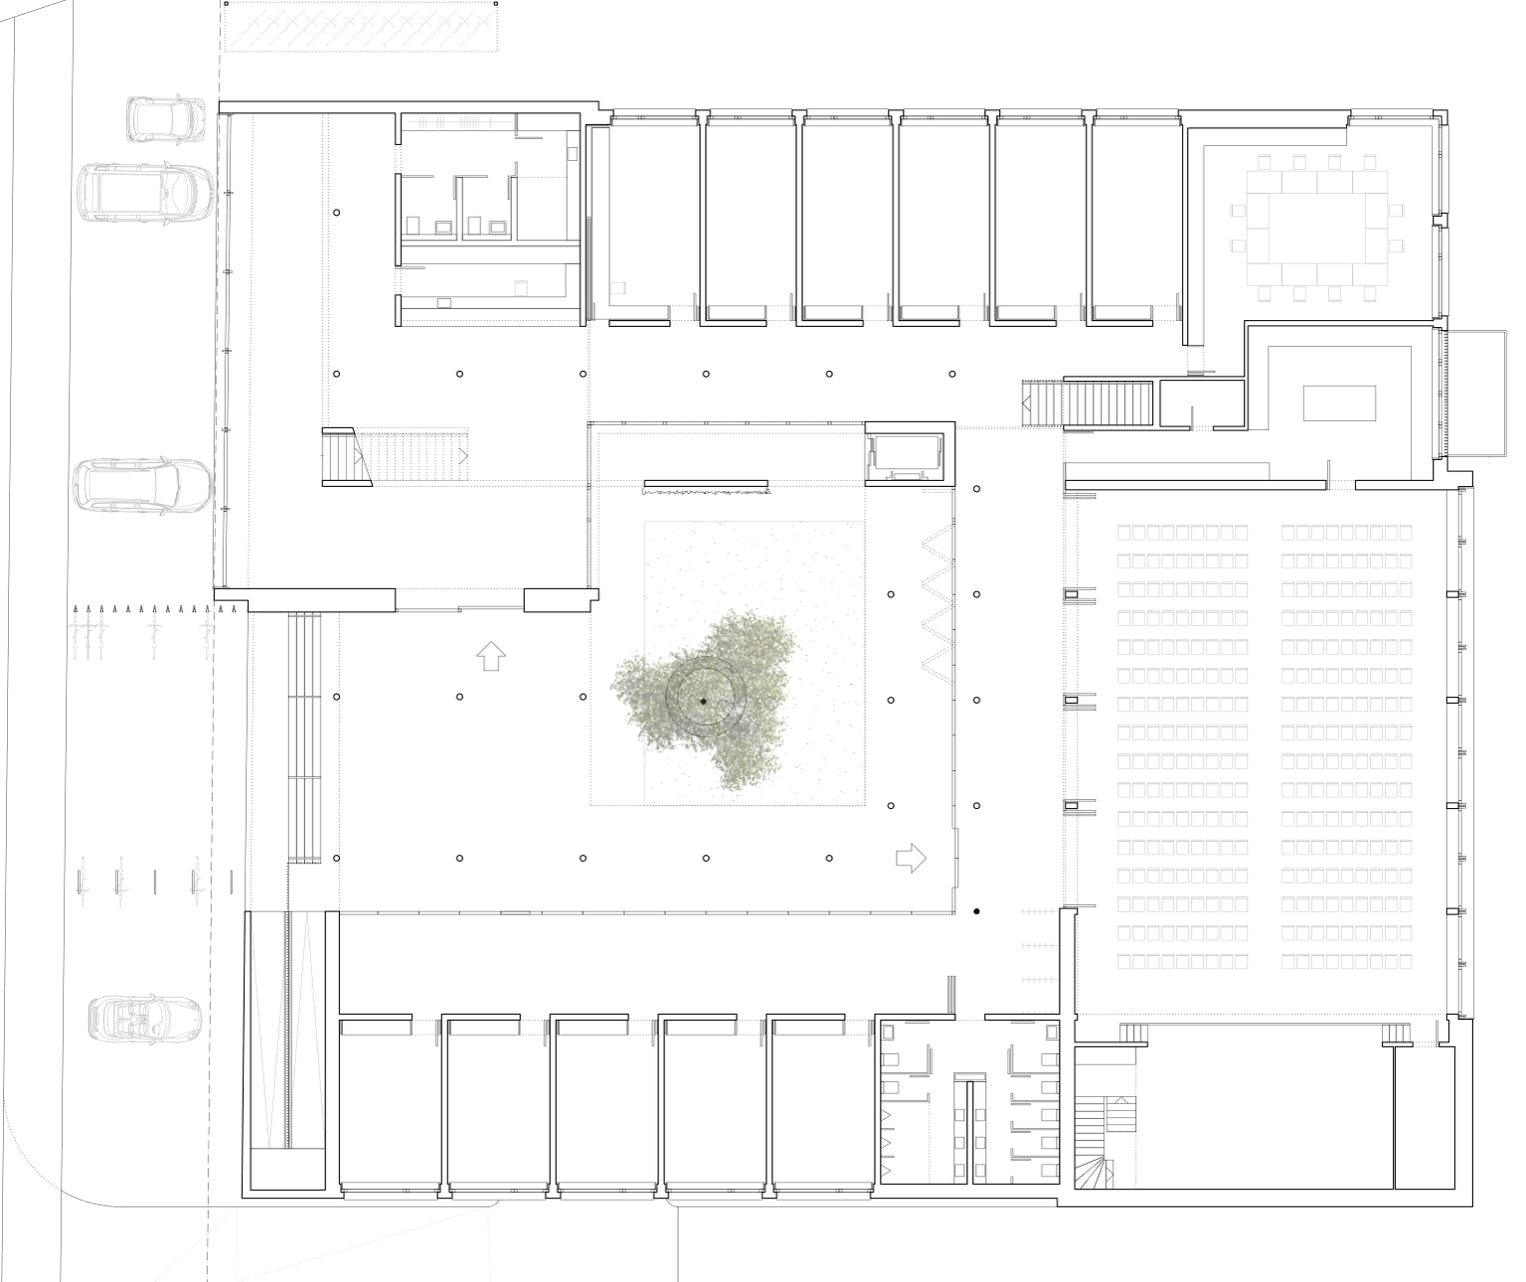 Plan Grundriss Erdgeschoss. Hansjörg Betschart Architektur ©.